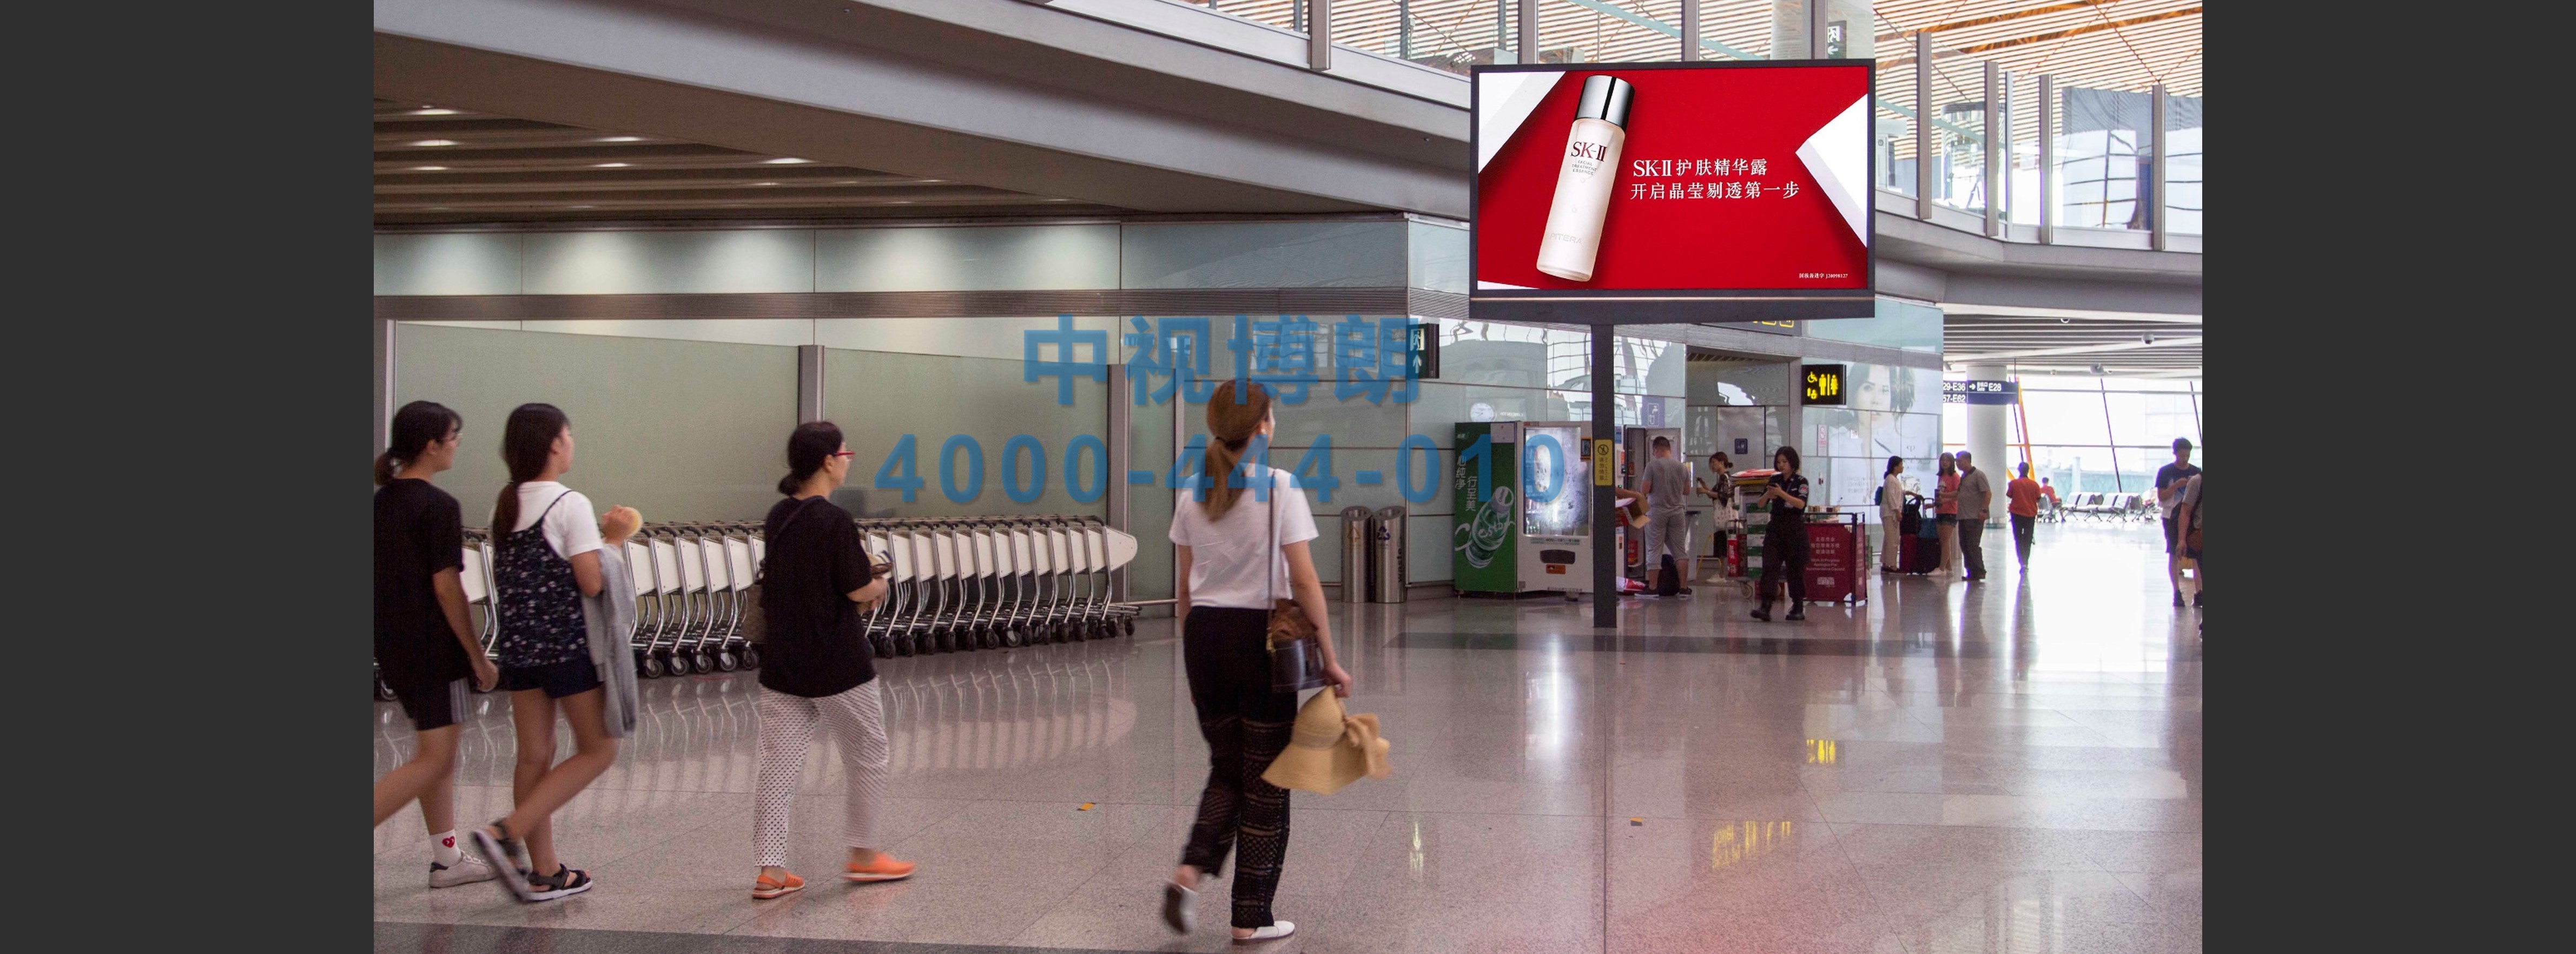 北京首都机场广告-T3 International Departure Duty Free Zone High Altitude LED Screen